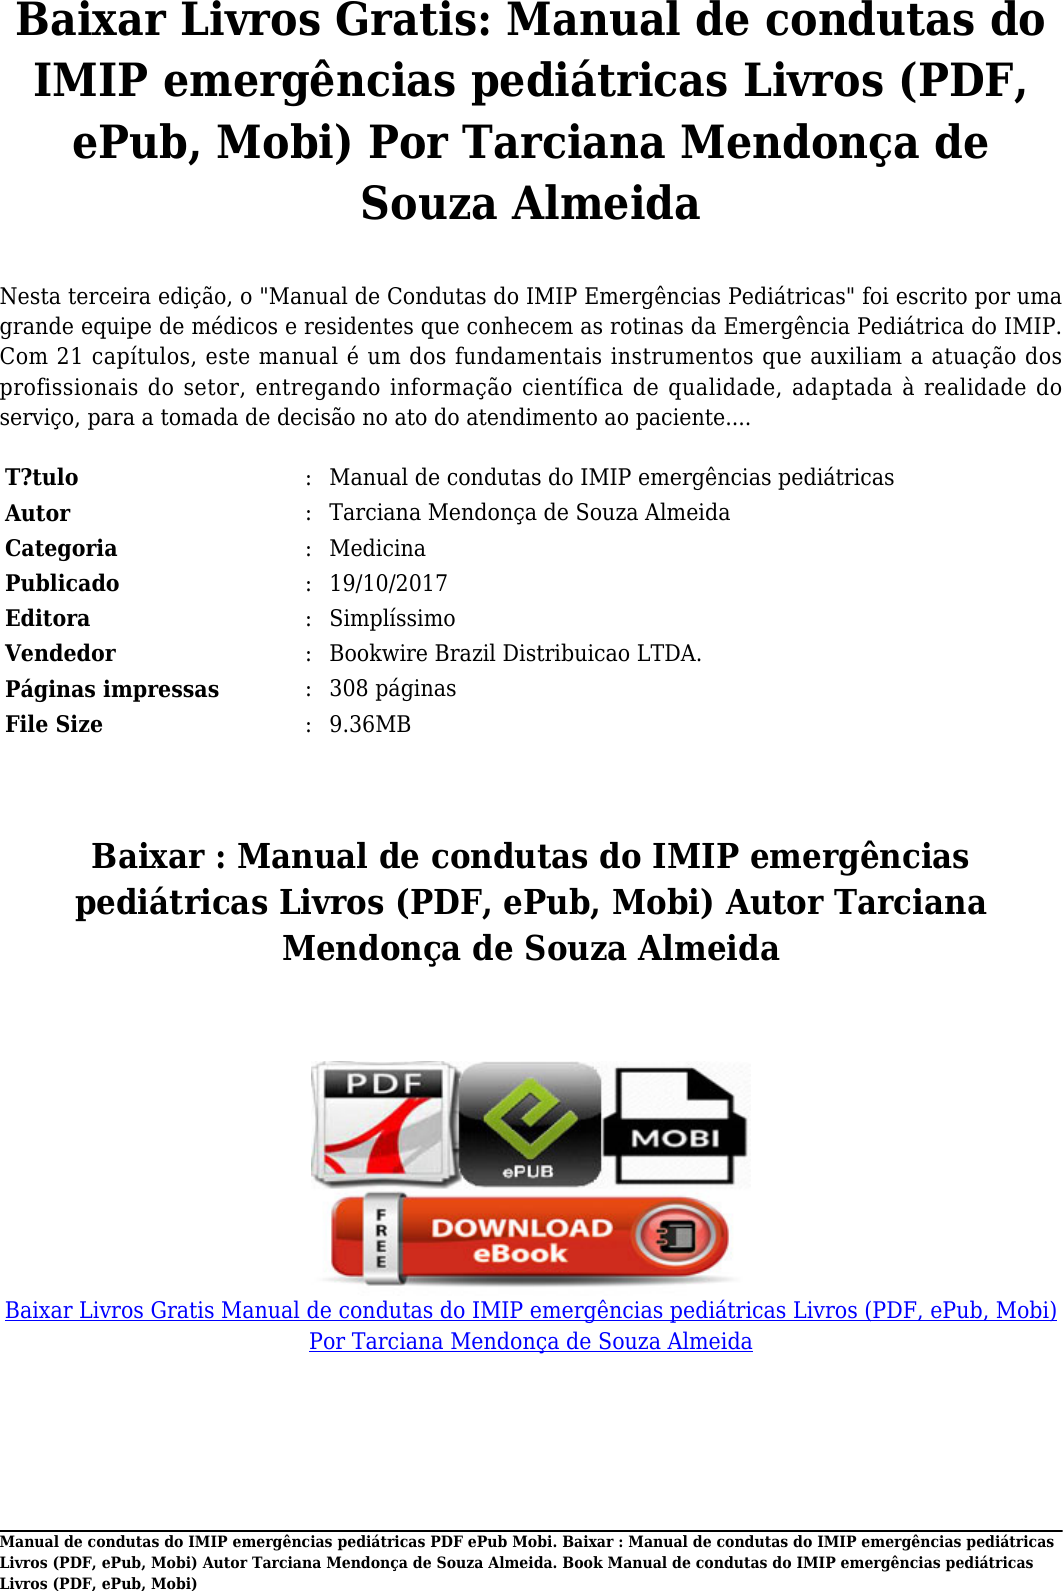 Page 2 of 6 - Baixar Manual De Condutas Do IMIP Emergências Pediátricas Livros (PDF, EPub, Mobi) Autor Tarciana Mendonça Souza Almeida E Pub, Por T